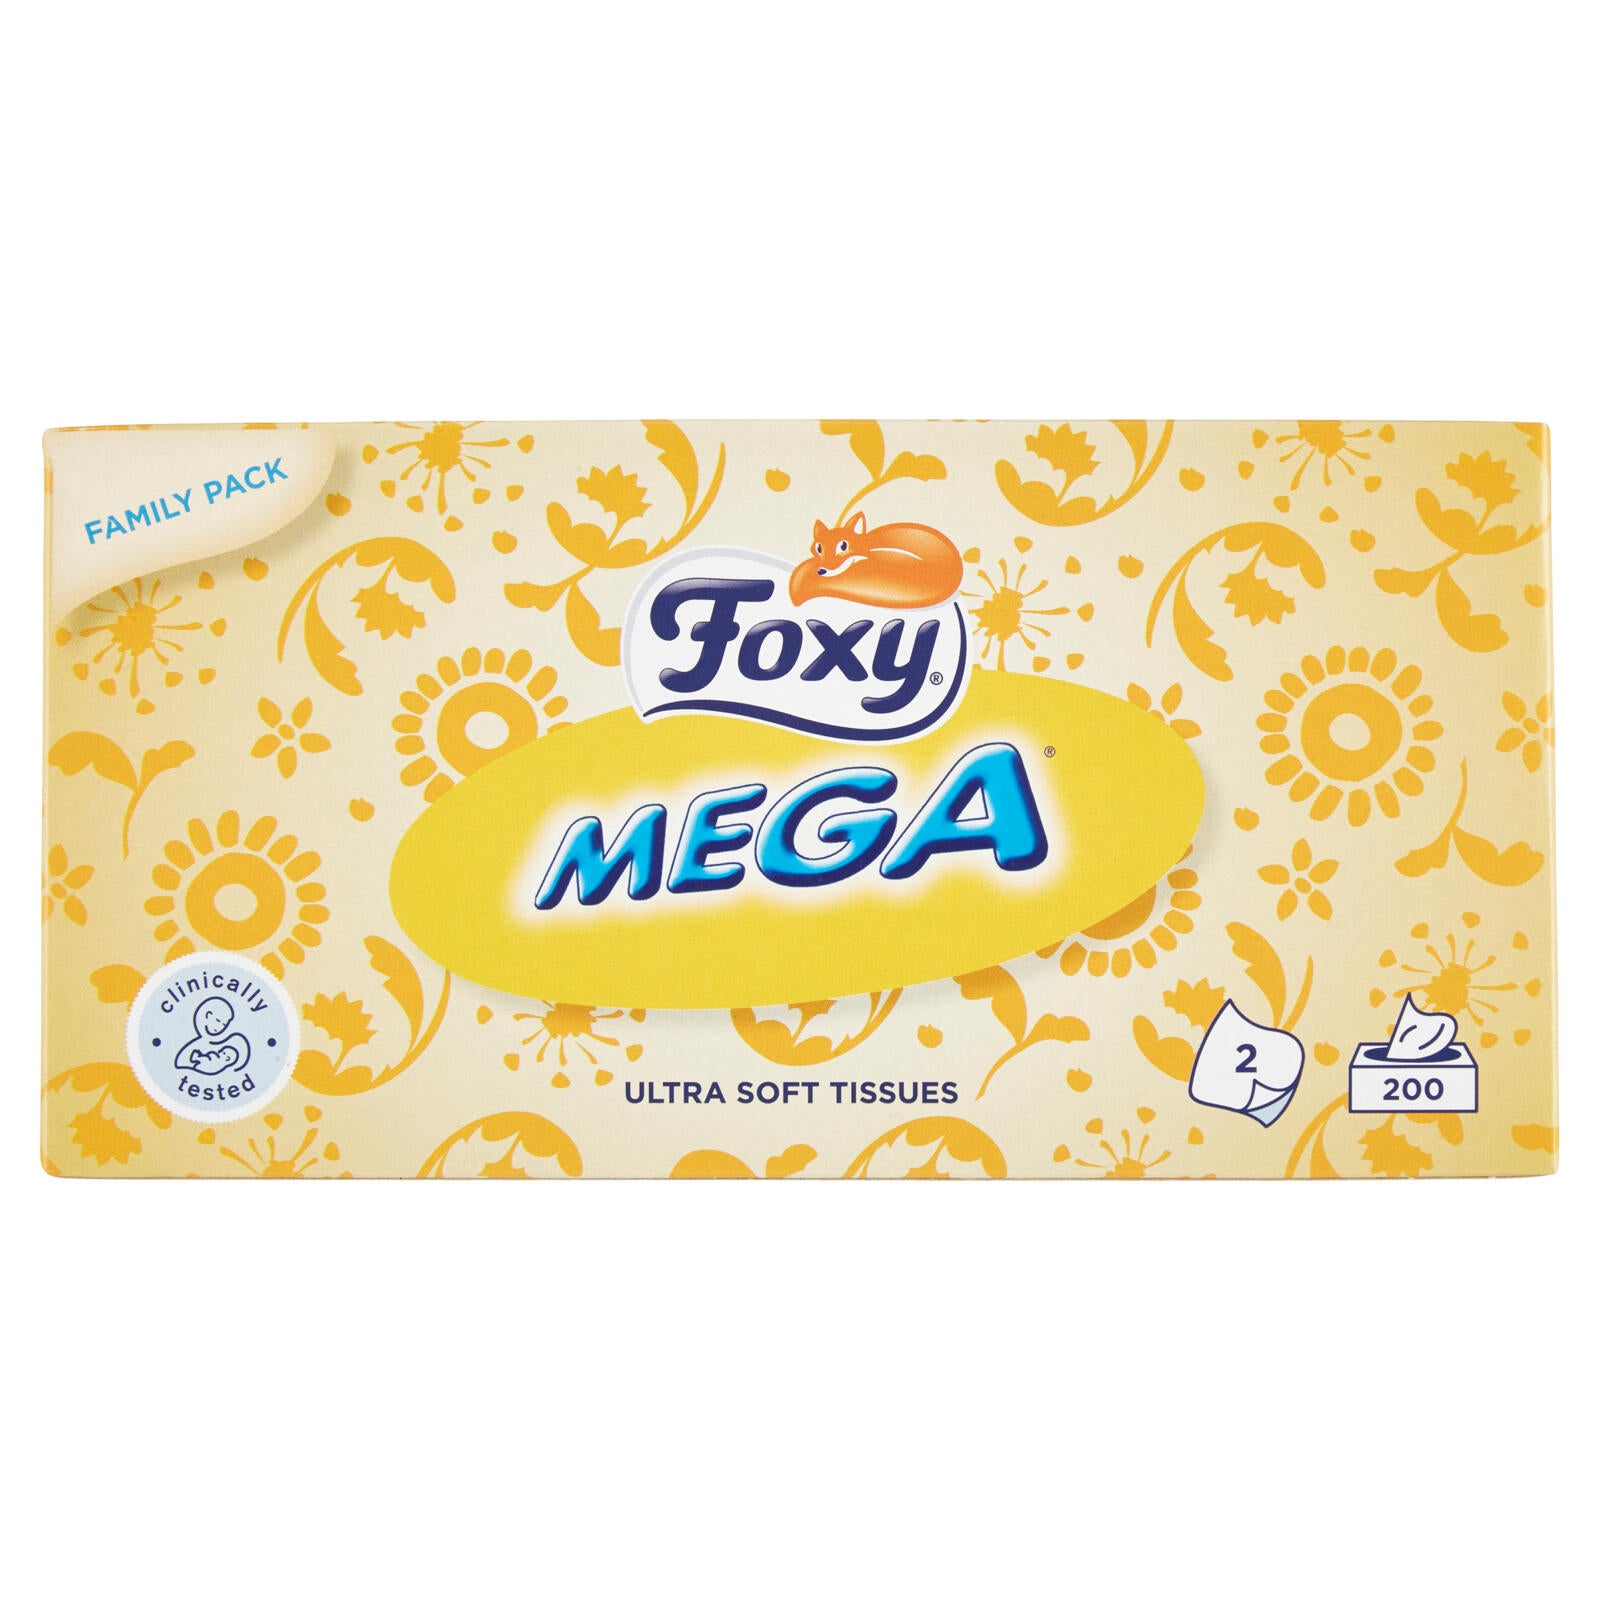 Foxy Mega Veline 2 veli 200 pezzi (astucci in colori assortiti) ->